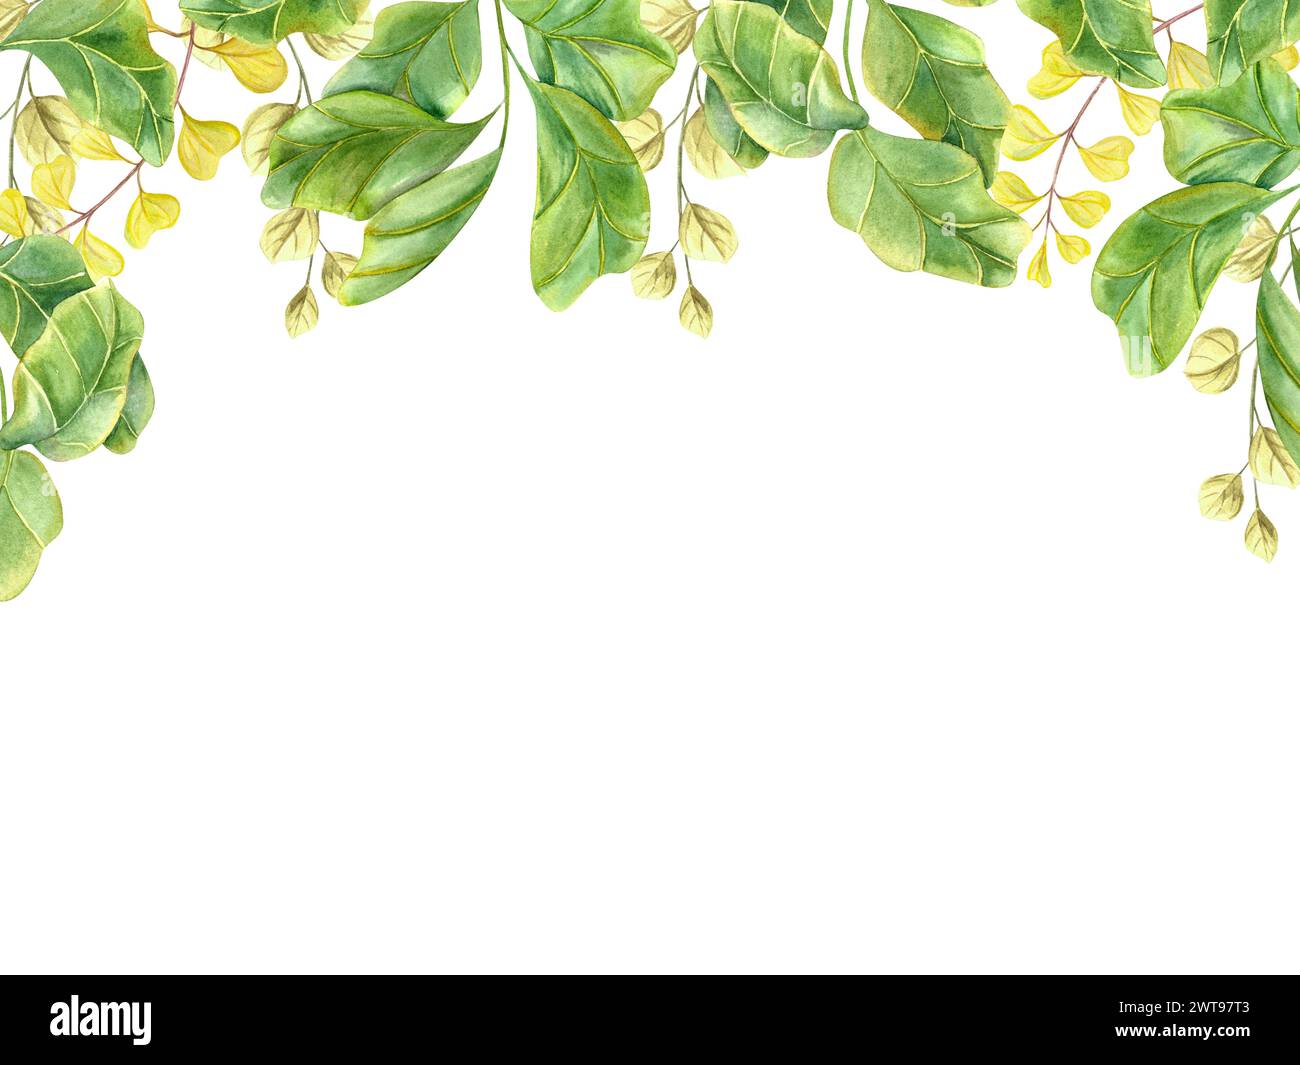 Horizontaler Rahmen mit grünen Pflanzen. Zimmerpflanze, Geige, Abb. Wiesenkräuter. Riesige Äste mit grünen Blättern. Aquarellabbildung zur Begrüßung Stockfoto